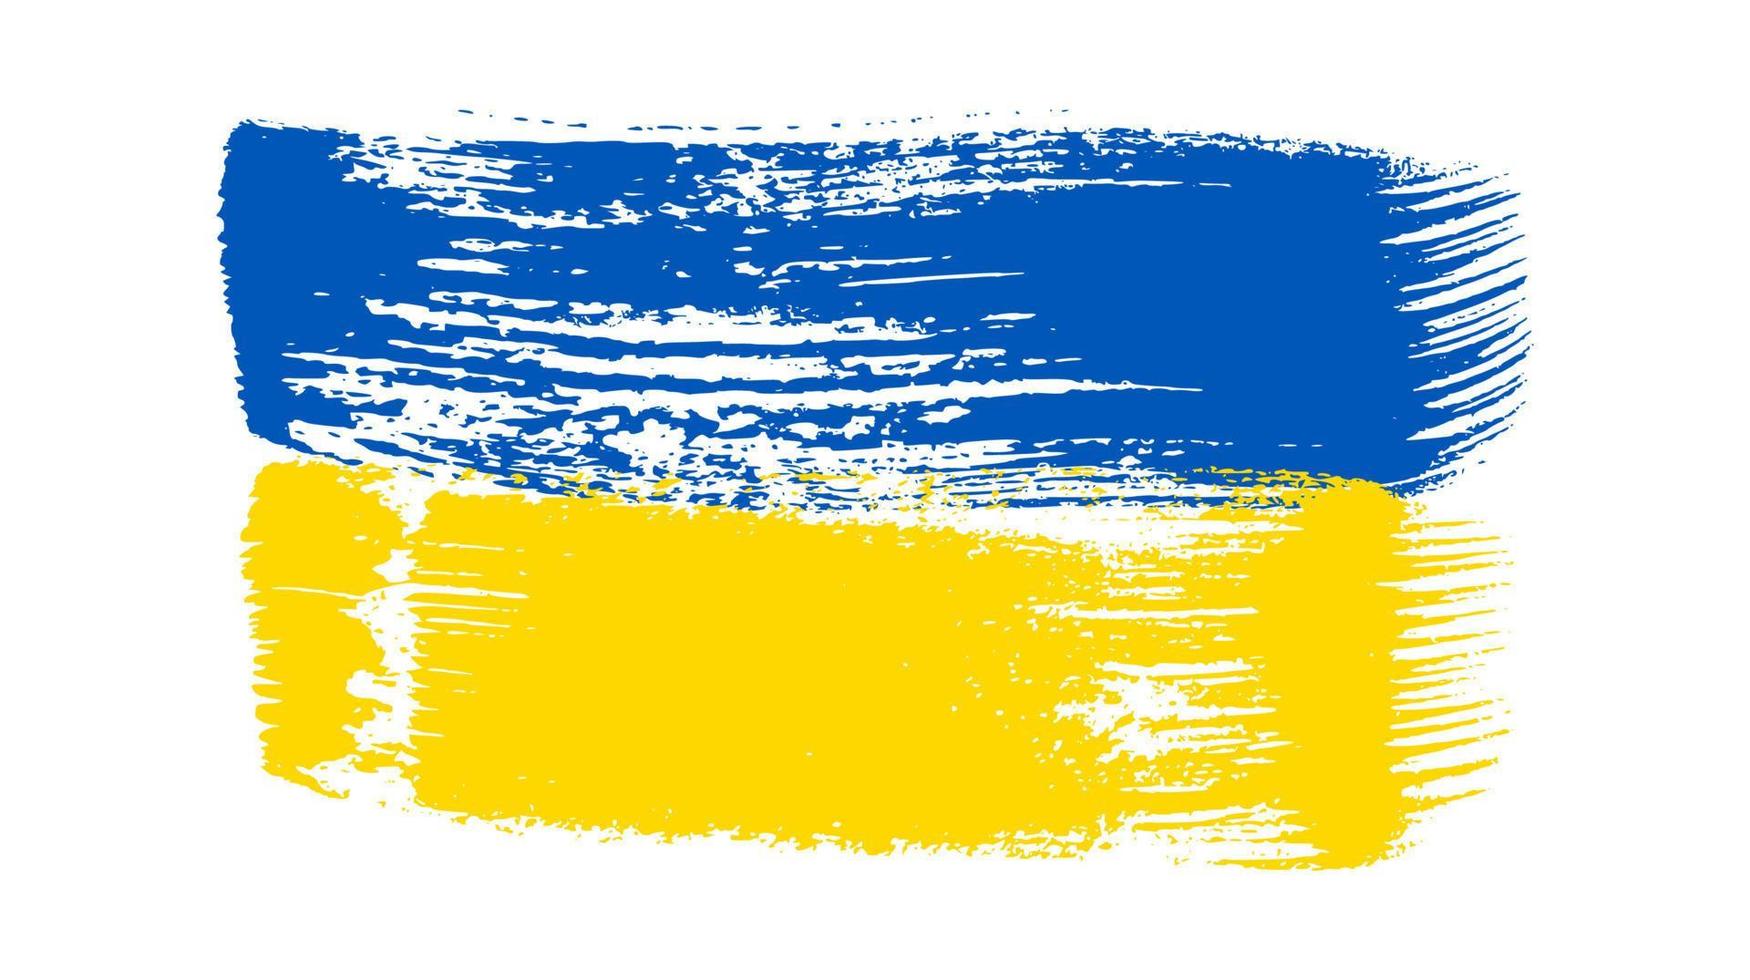 ukrainische Nationalflagge im Grunge-Stil vektor